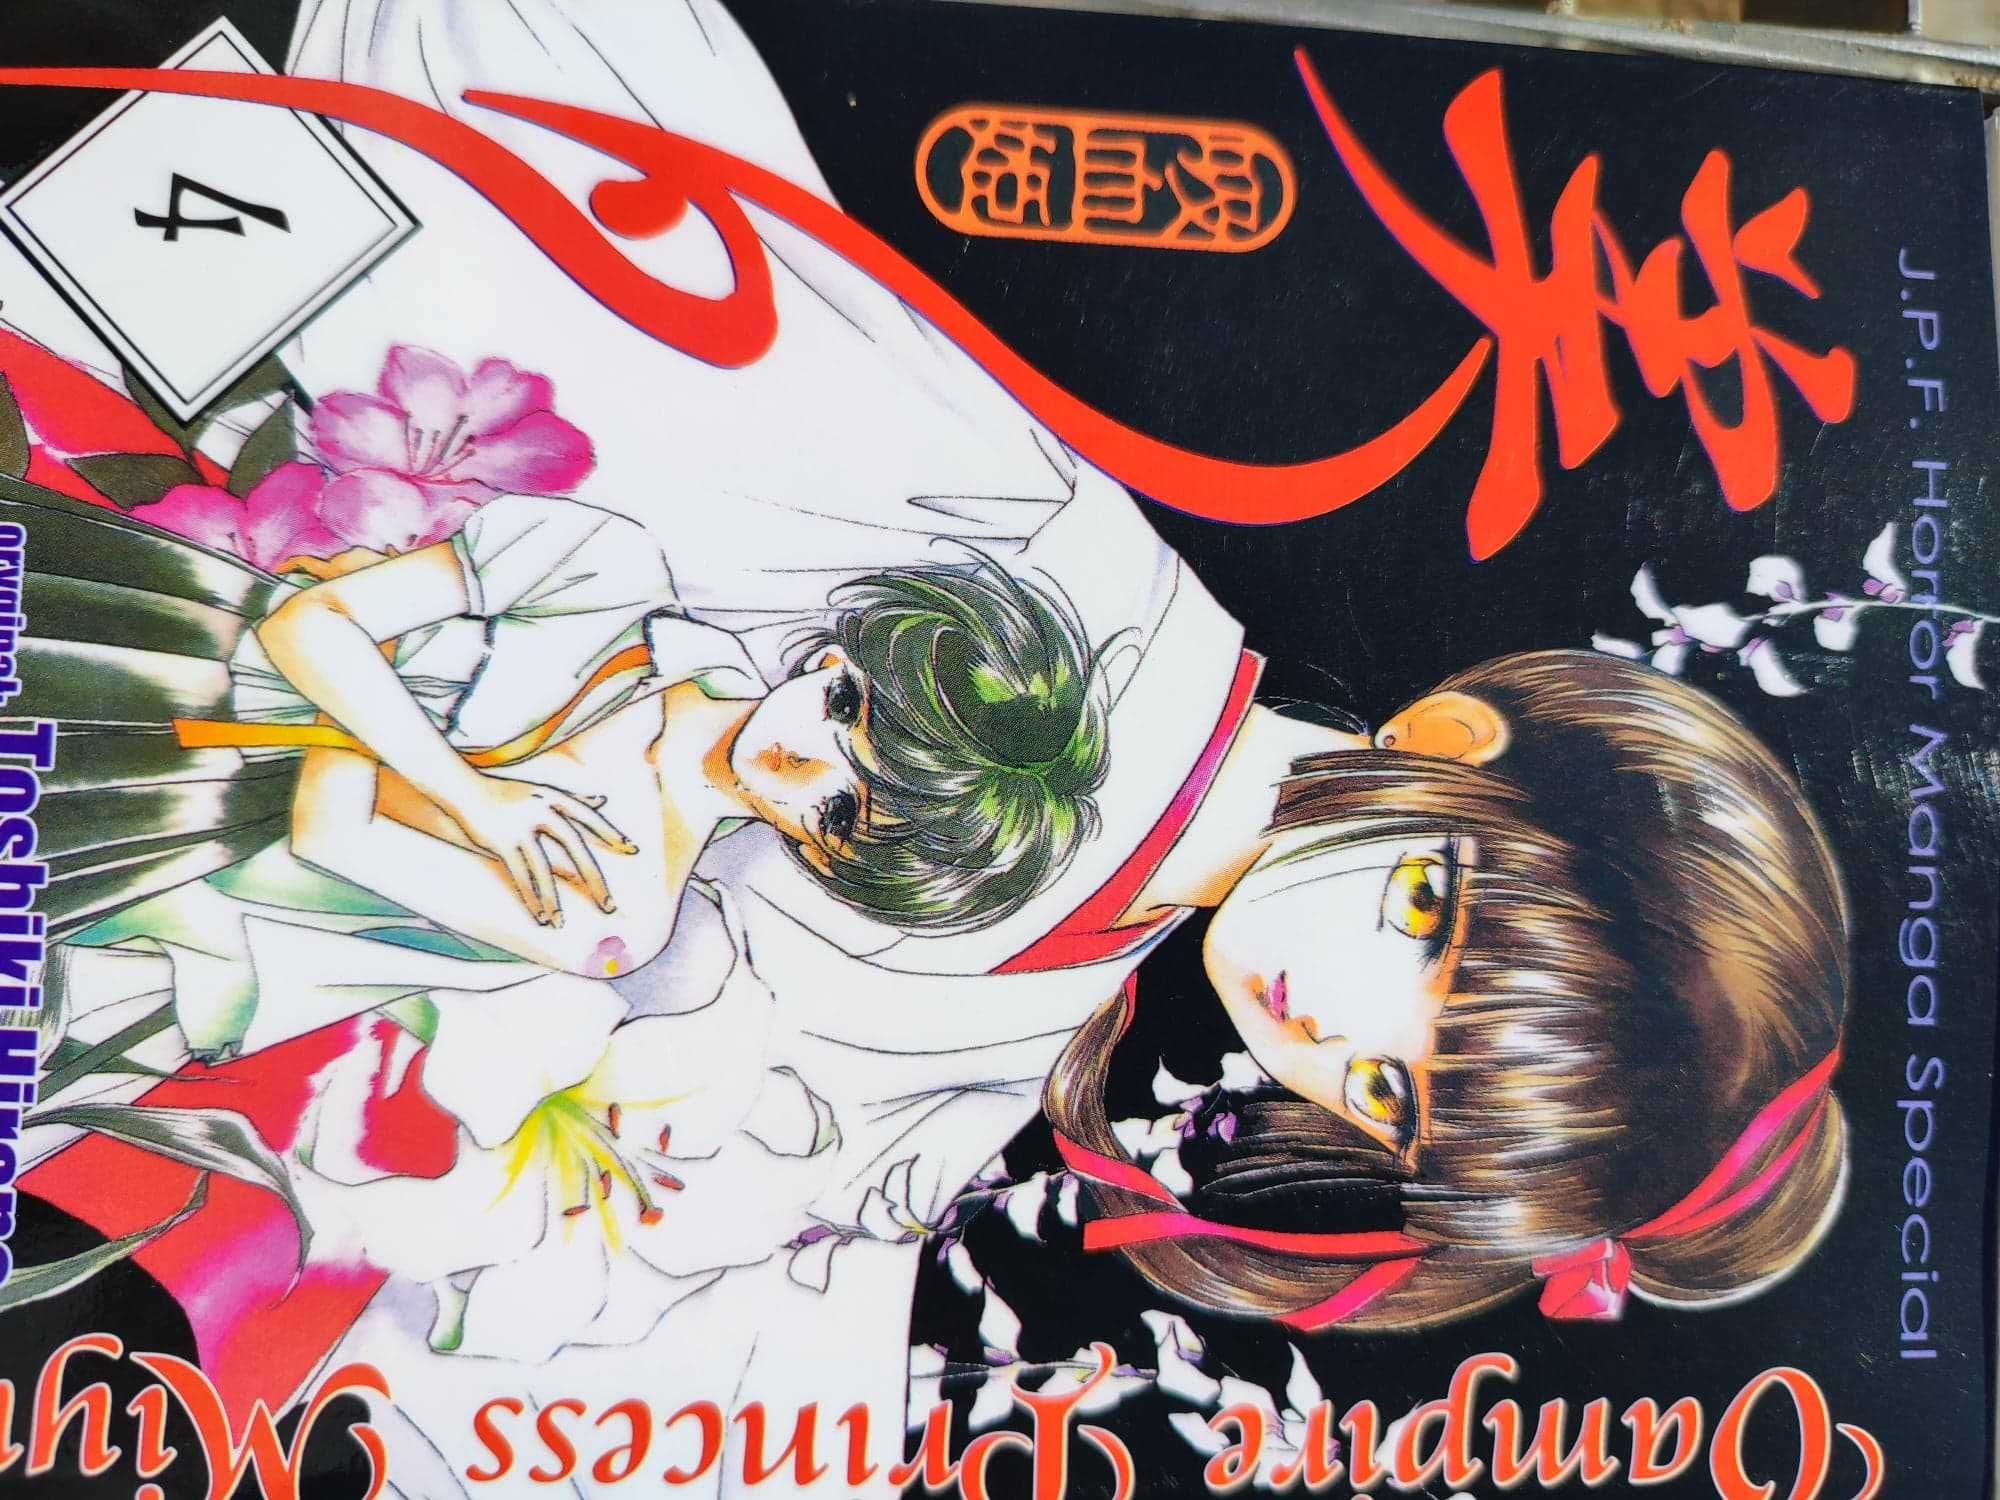 vampire princess miyu manga 3 4 5 6